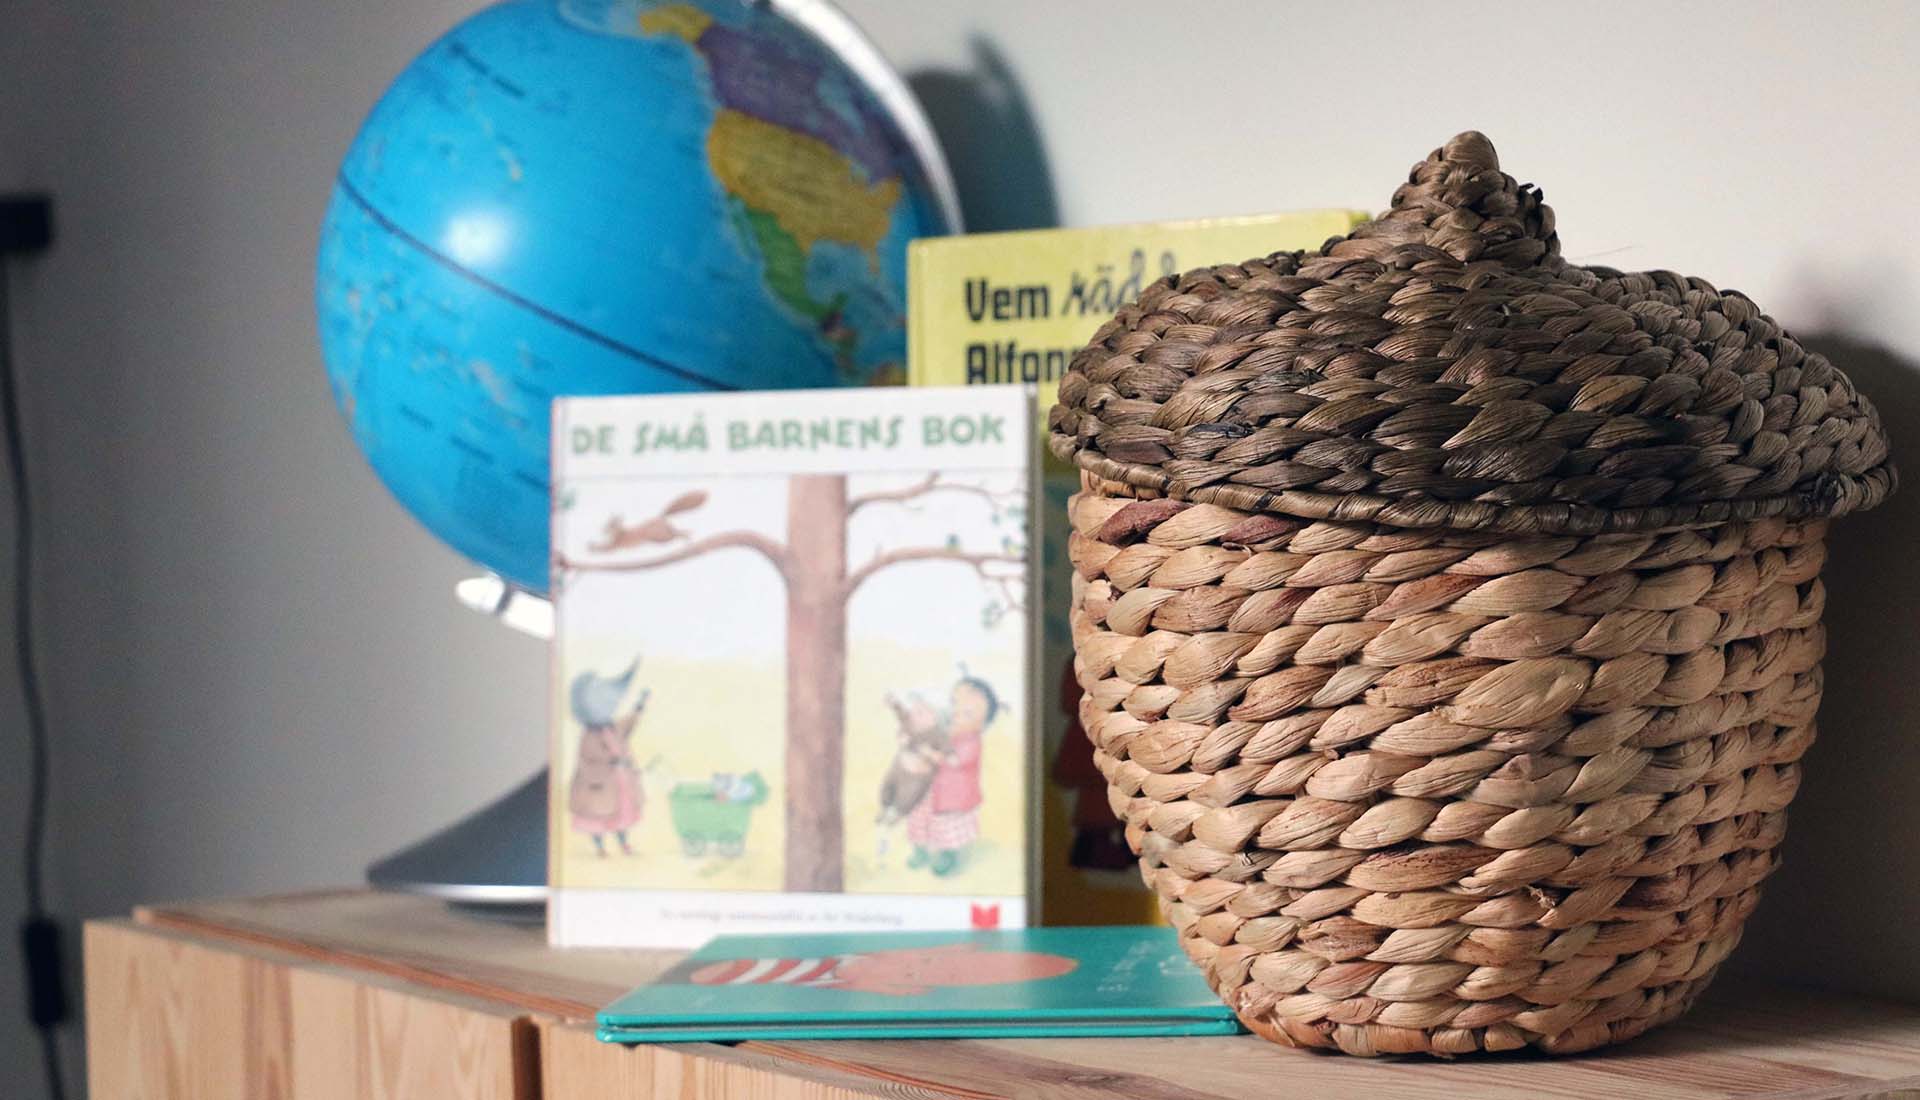 En bokhylla med en korg, jordglob och barnböcker